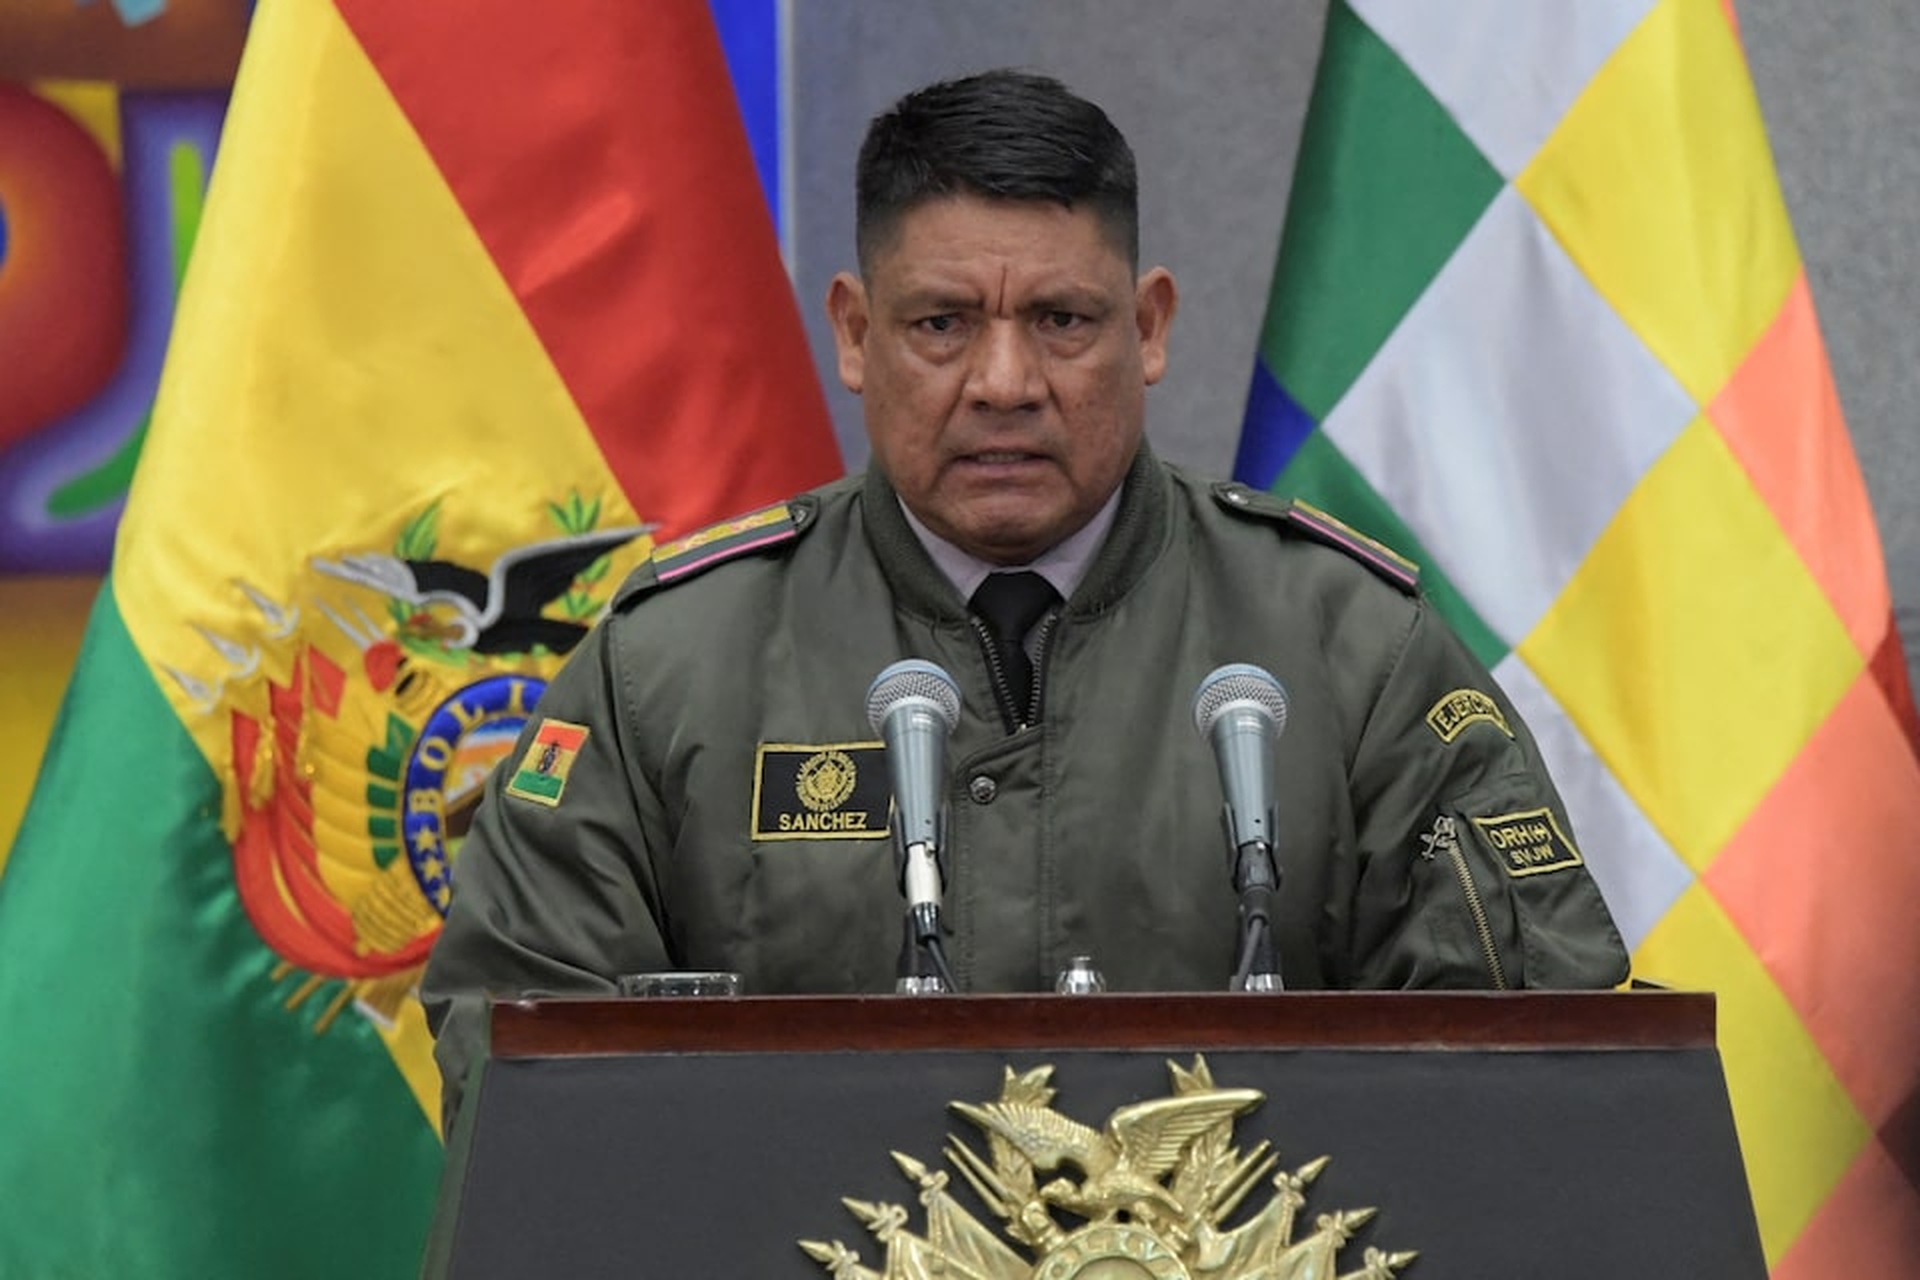 Đảo chính thất bại tại Bolivia, tướng quân đội bị bắt - 7